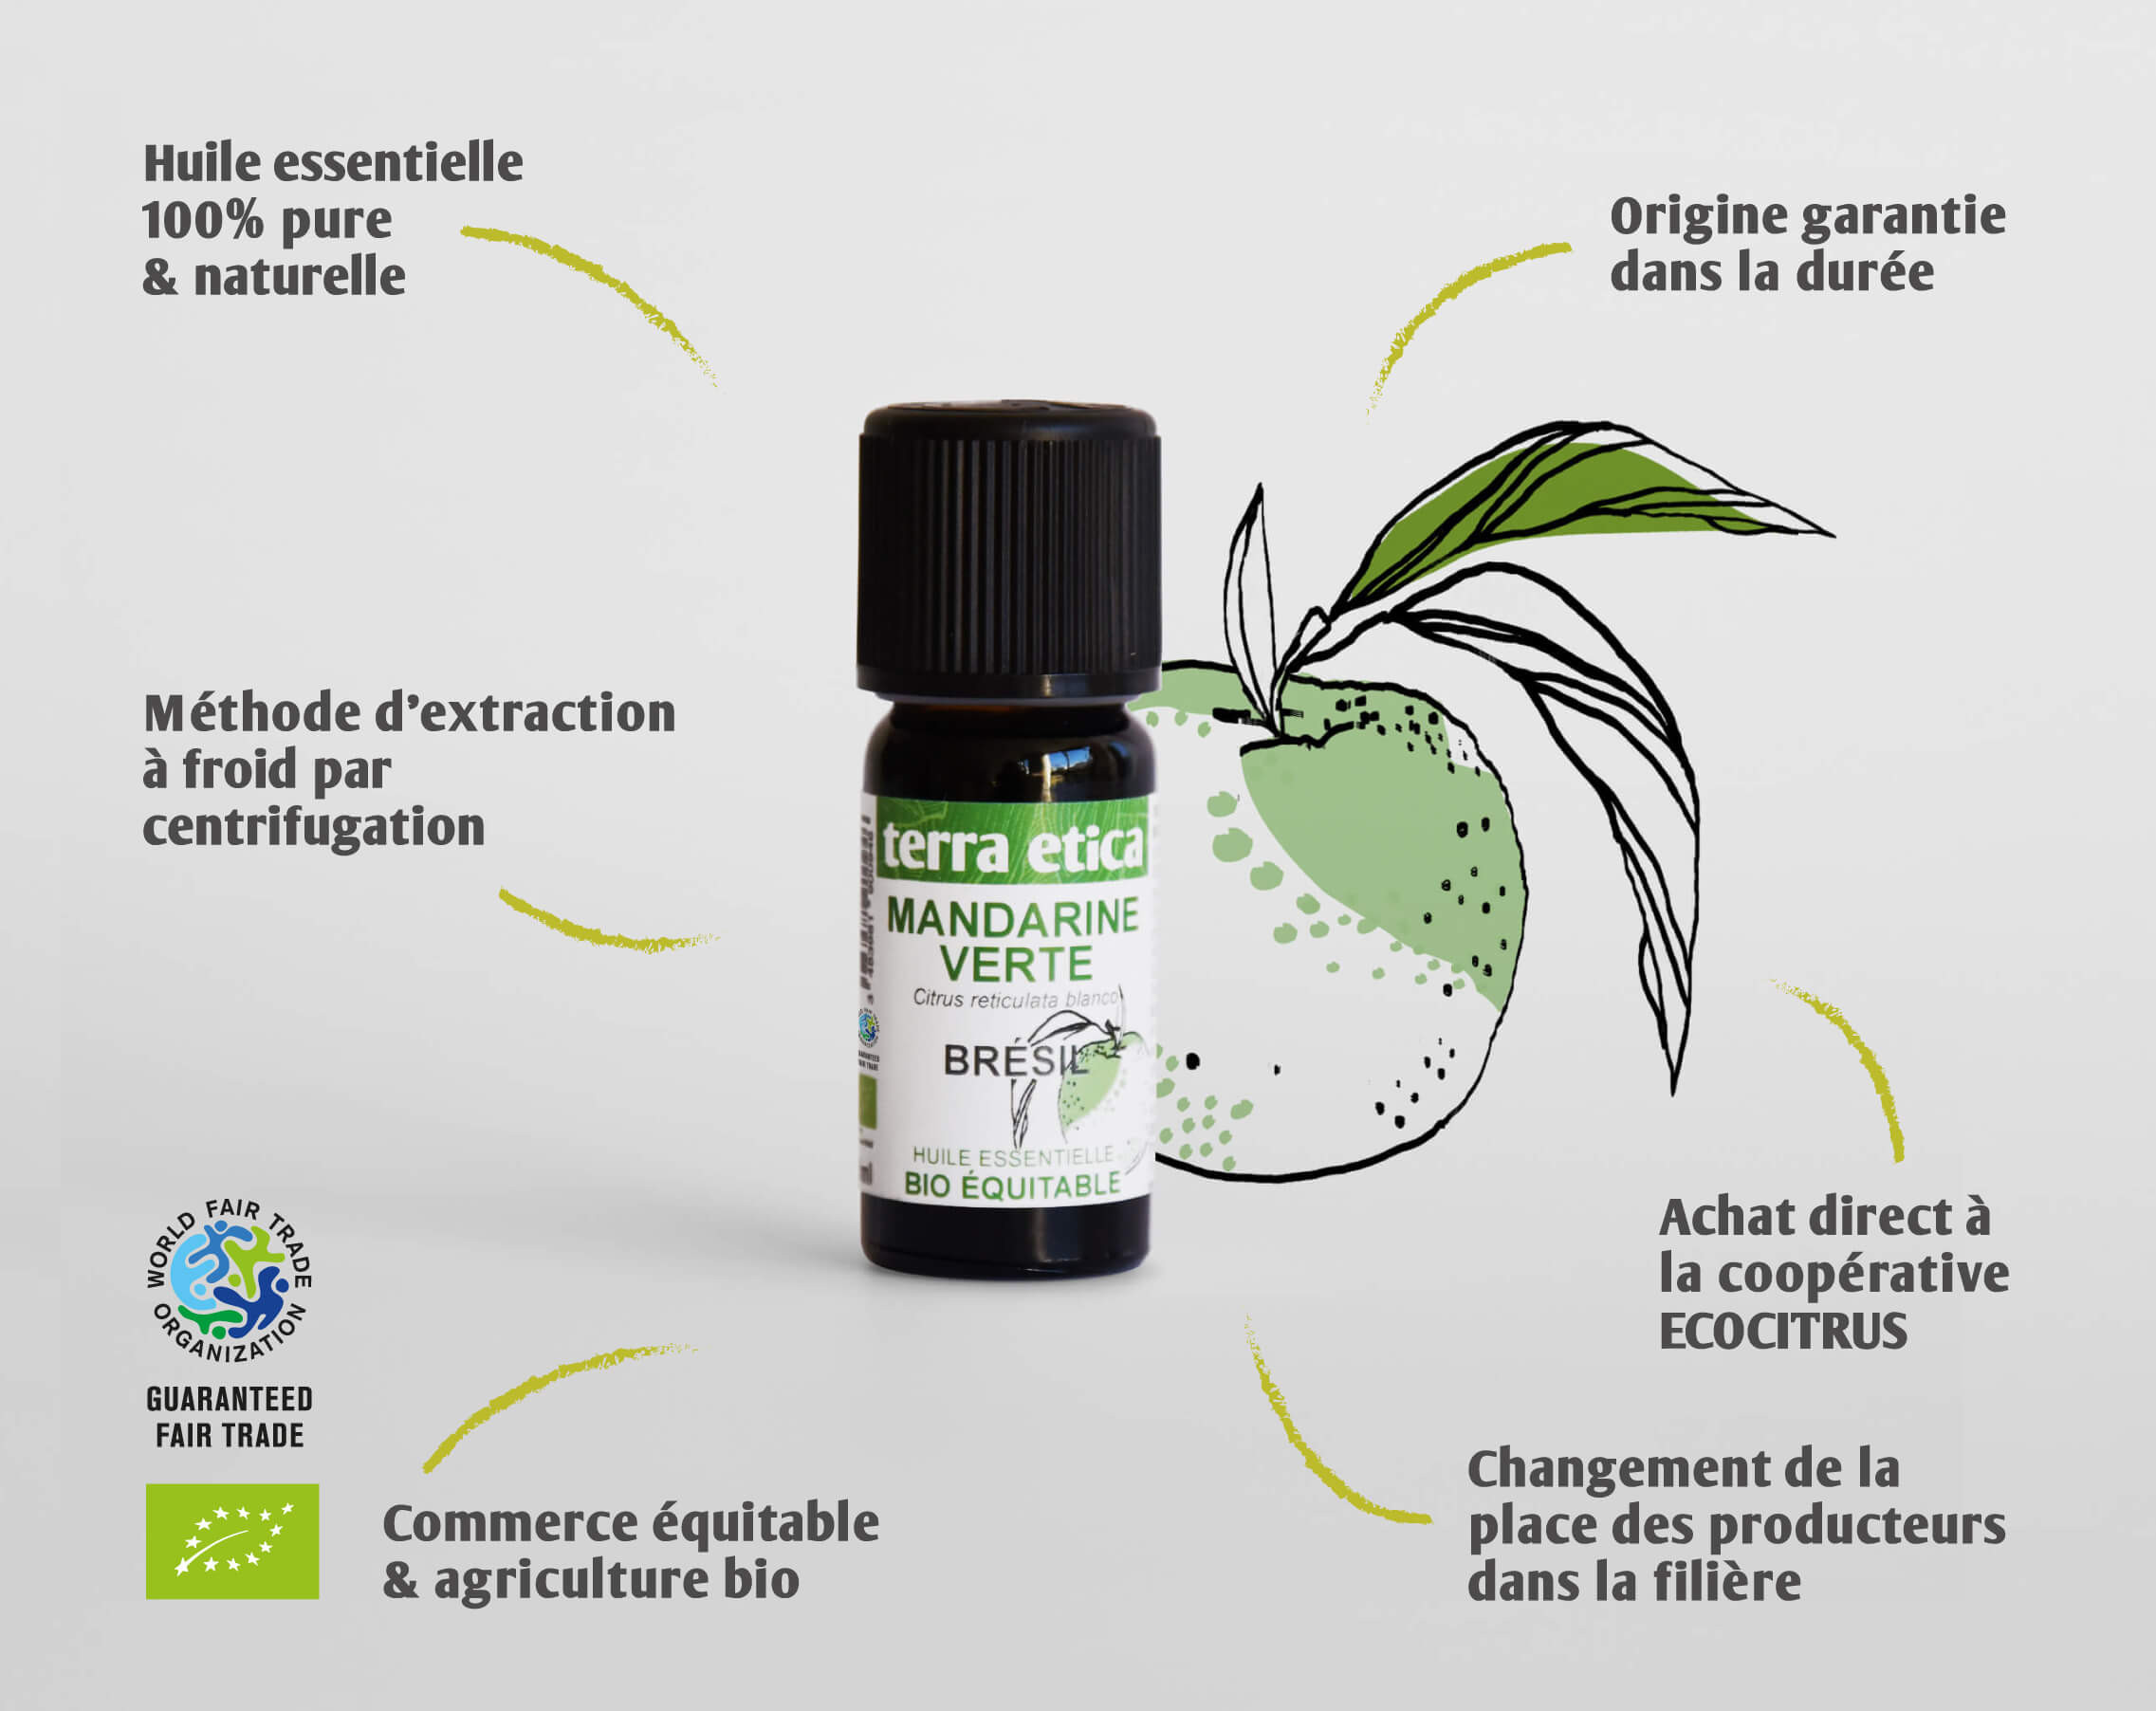 Terra Etica - Pure huile essentielle Mandarine verte biologique et équitable